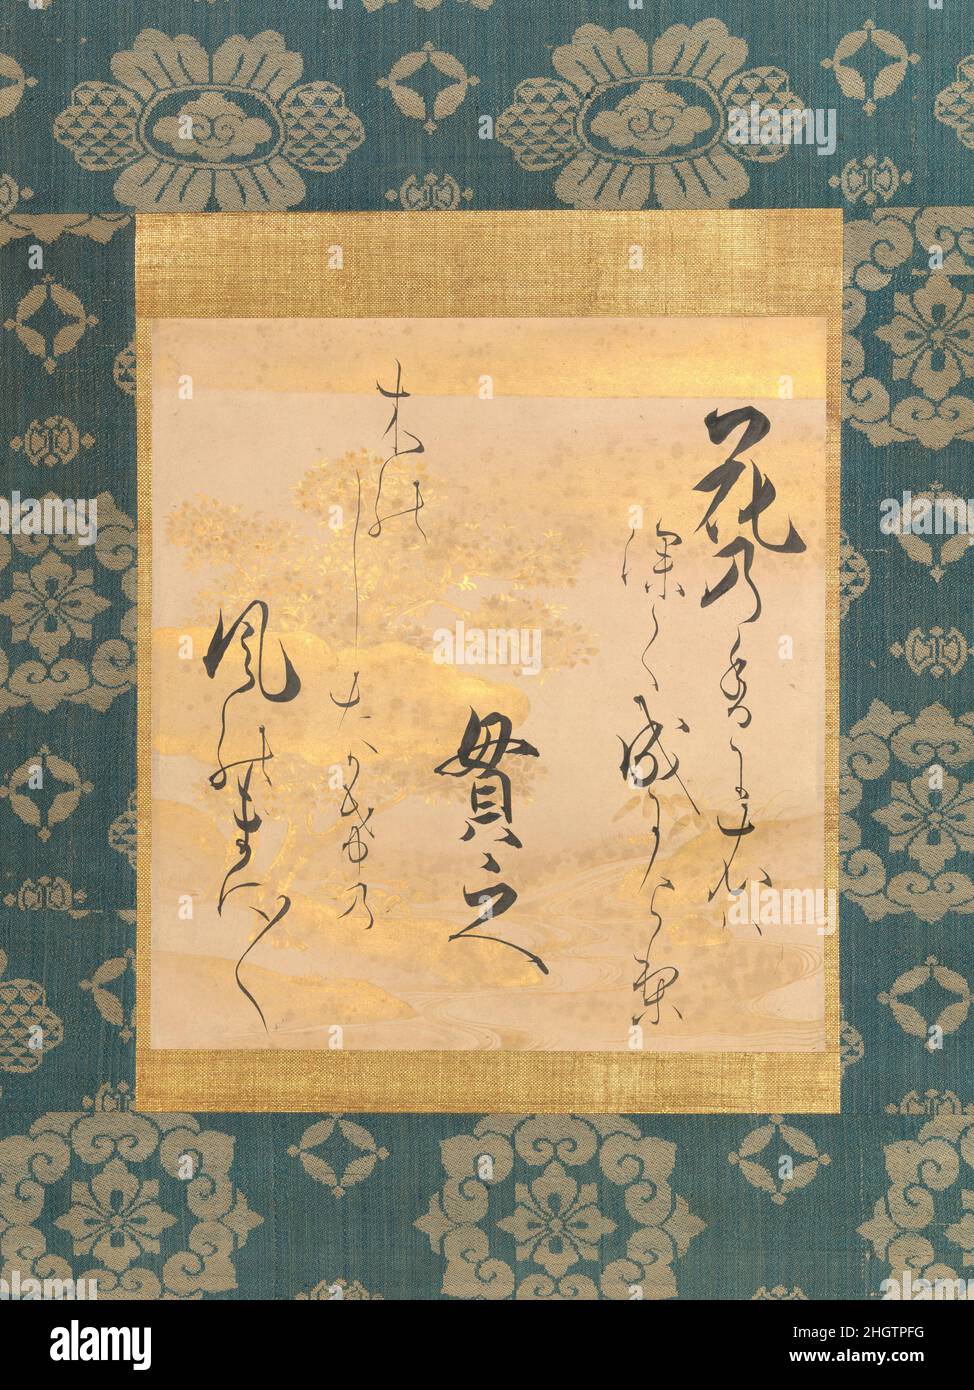 Gedicht von Ki no Tsurayuki (ca. 872–945) auf dekoriertem Papier mit Kirschblüten Mitte bis Ende des 17th. Jahrhunderts leitete Ogata S?ken Ogata S?ken eine wohlhabende Handelsfamilie aus Kyoto, die sich auf Textilien spezialisierte, enge Beziehungen zum Palast hatte und die traditionelle japanische Kunst im frühen 18. Jahrhundert in Kyoto wieder aufleben ließ. Seine klare, elegante und dynamische Kalligraphie zeigt seine Verbundenheit mit dem Stil von Hon’ami K?etsu, der Anfang des 17. Jahrhunderts die Kunst des Pinselschreibens revolutioniert hatte. Hier transkribierte S?ken einen Waka (31-silbige Gerichtsverse) von Ki no Tsurayuki und – um eine unerwartete Wendung hinzuzufügen – beinhaltete t Stockfoto